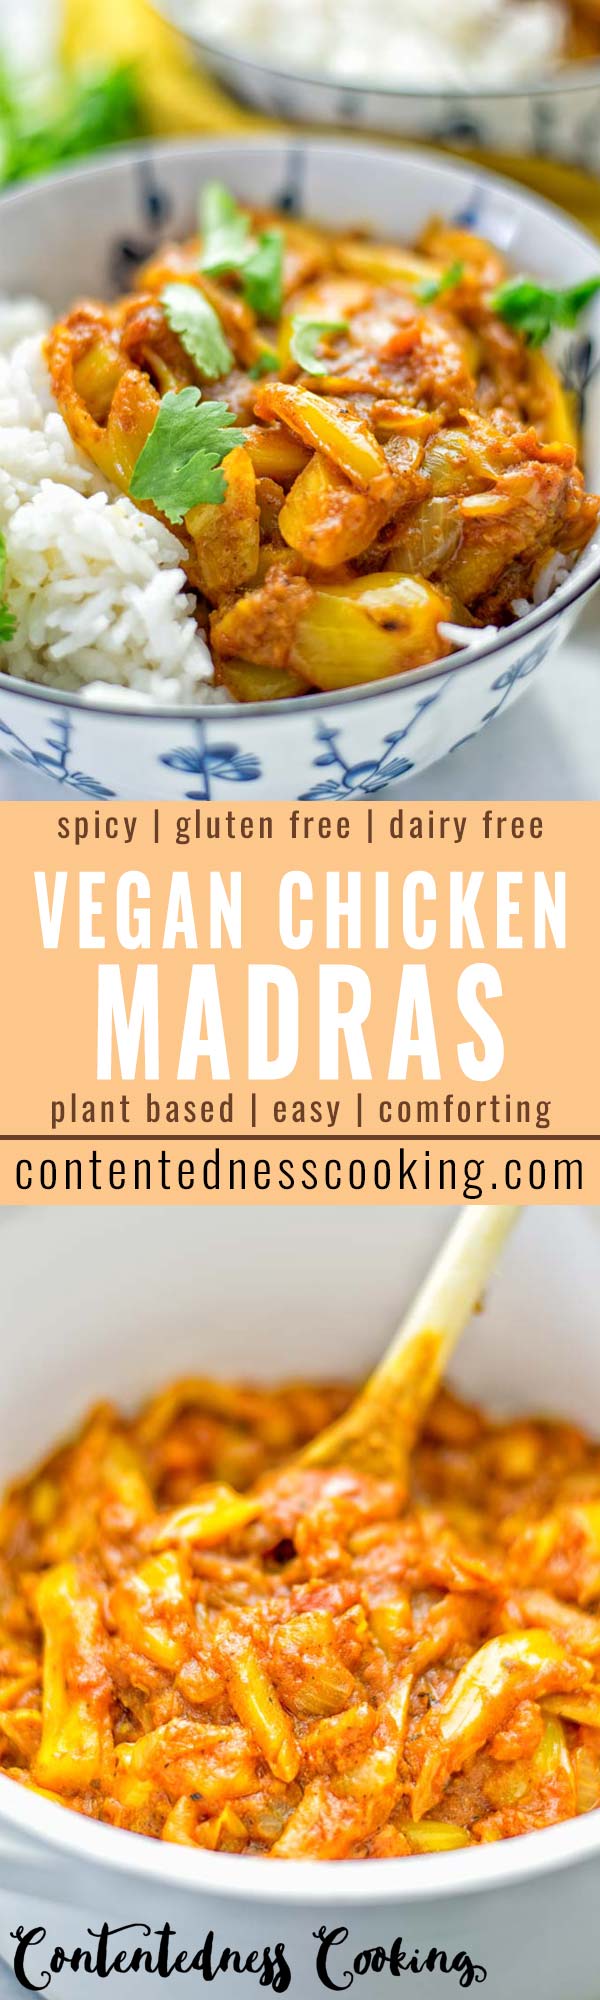 Vegan Chicken Madras | #vegan #glutenfree #contentednesscooking #plantbased #dairyfree